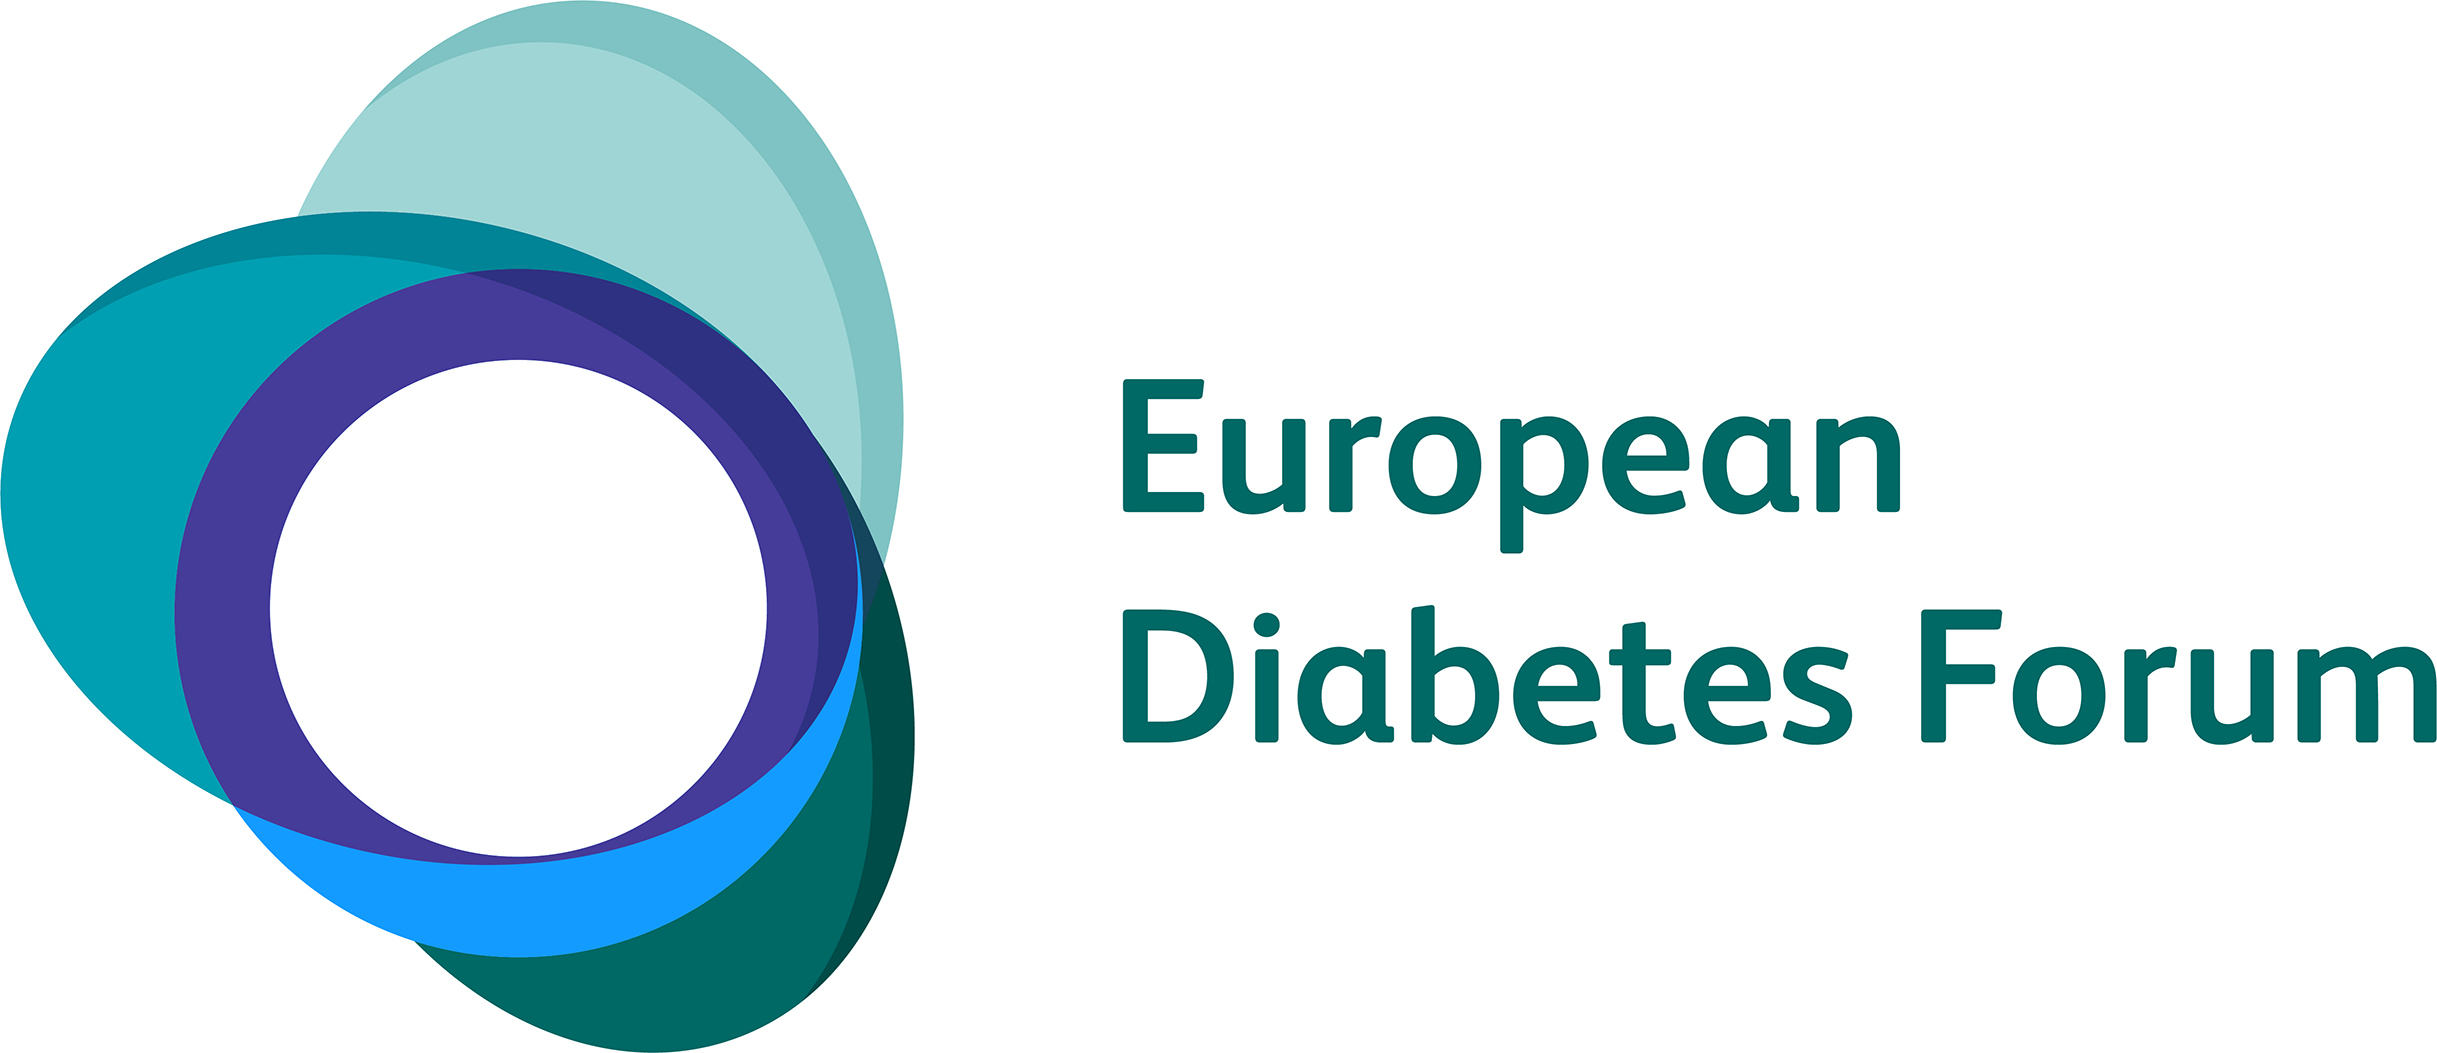 The European Diabetes Forum